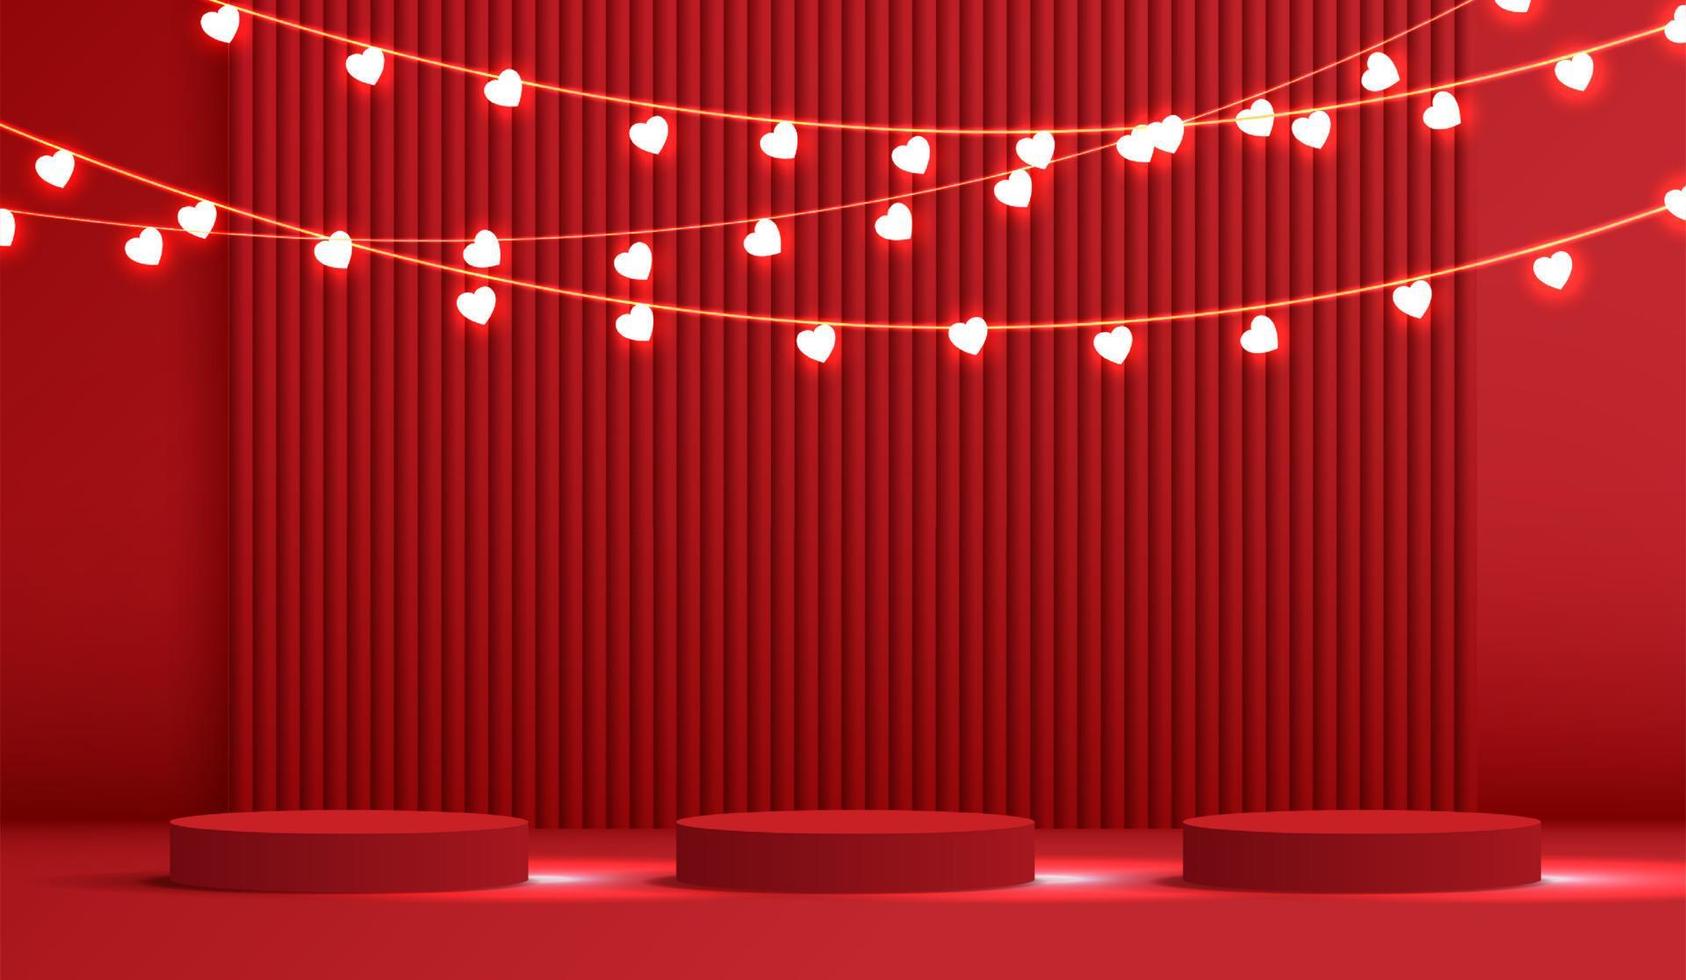 fröhlicher valentinstag und bühnenpodest mit herzförmiger beleuchtung. sockelszene mit für produkt, kosmetik, werbung, show, preisverleihung, auf rotem hintergrund. Vektordesign vektor